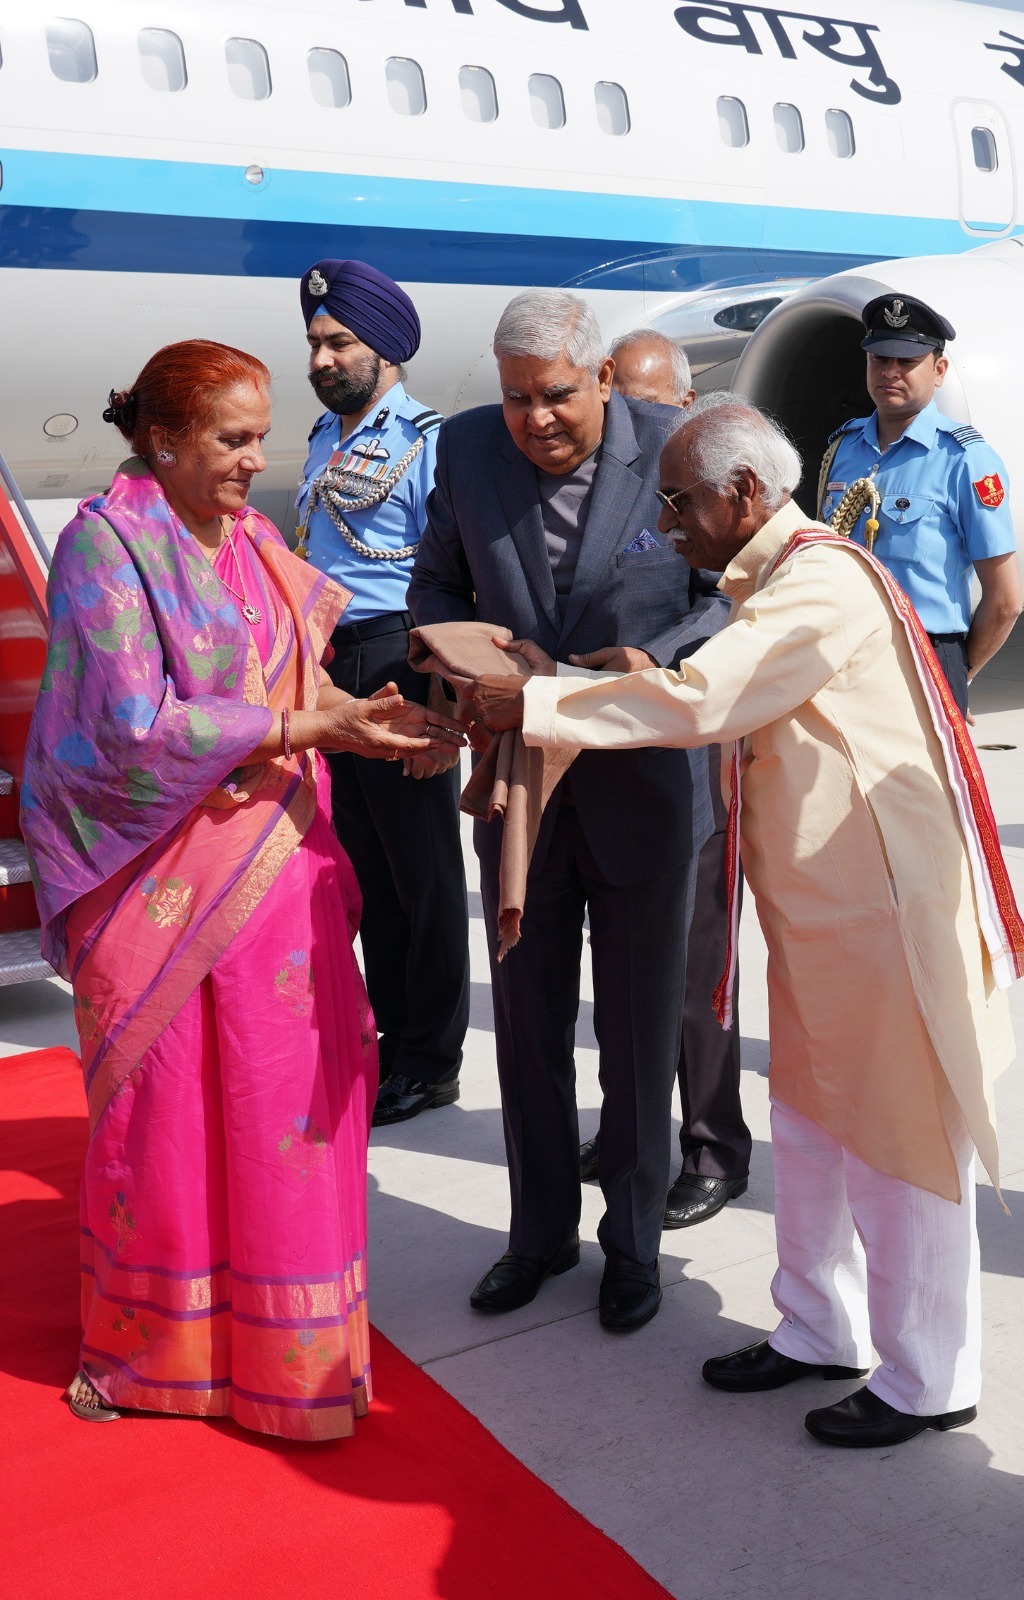 राज्यपाल श्री बंडारू दत्तात्रेय भारत के उप-राष्ट्रपति एवं पंजाब विश्वविद्यालय के कुलाधिपति श्री जगदीप धनखड़ व उनकी धर्मपत्नी श्रीमति सुदेश धनखड़ का चण्डीगढ़ हवाई अड्डे पर पधारने पर उनका स्वागत करते हुए